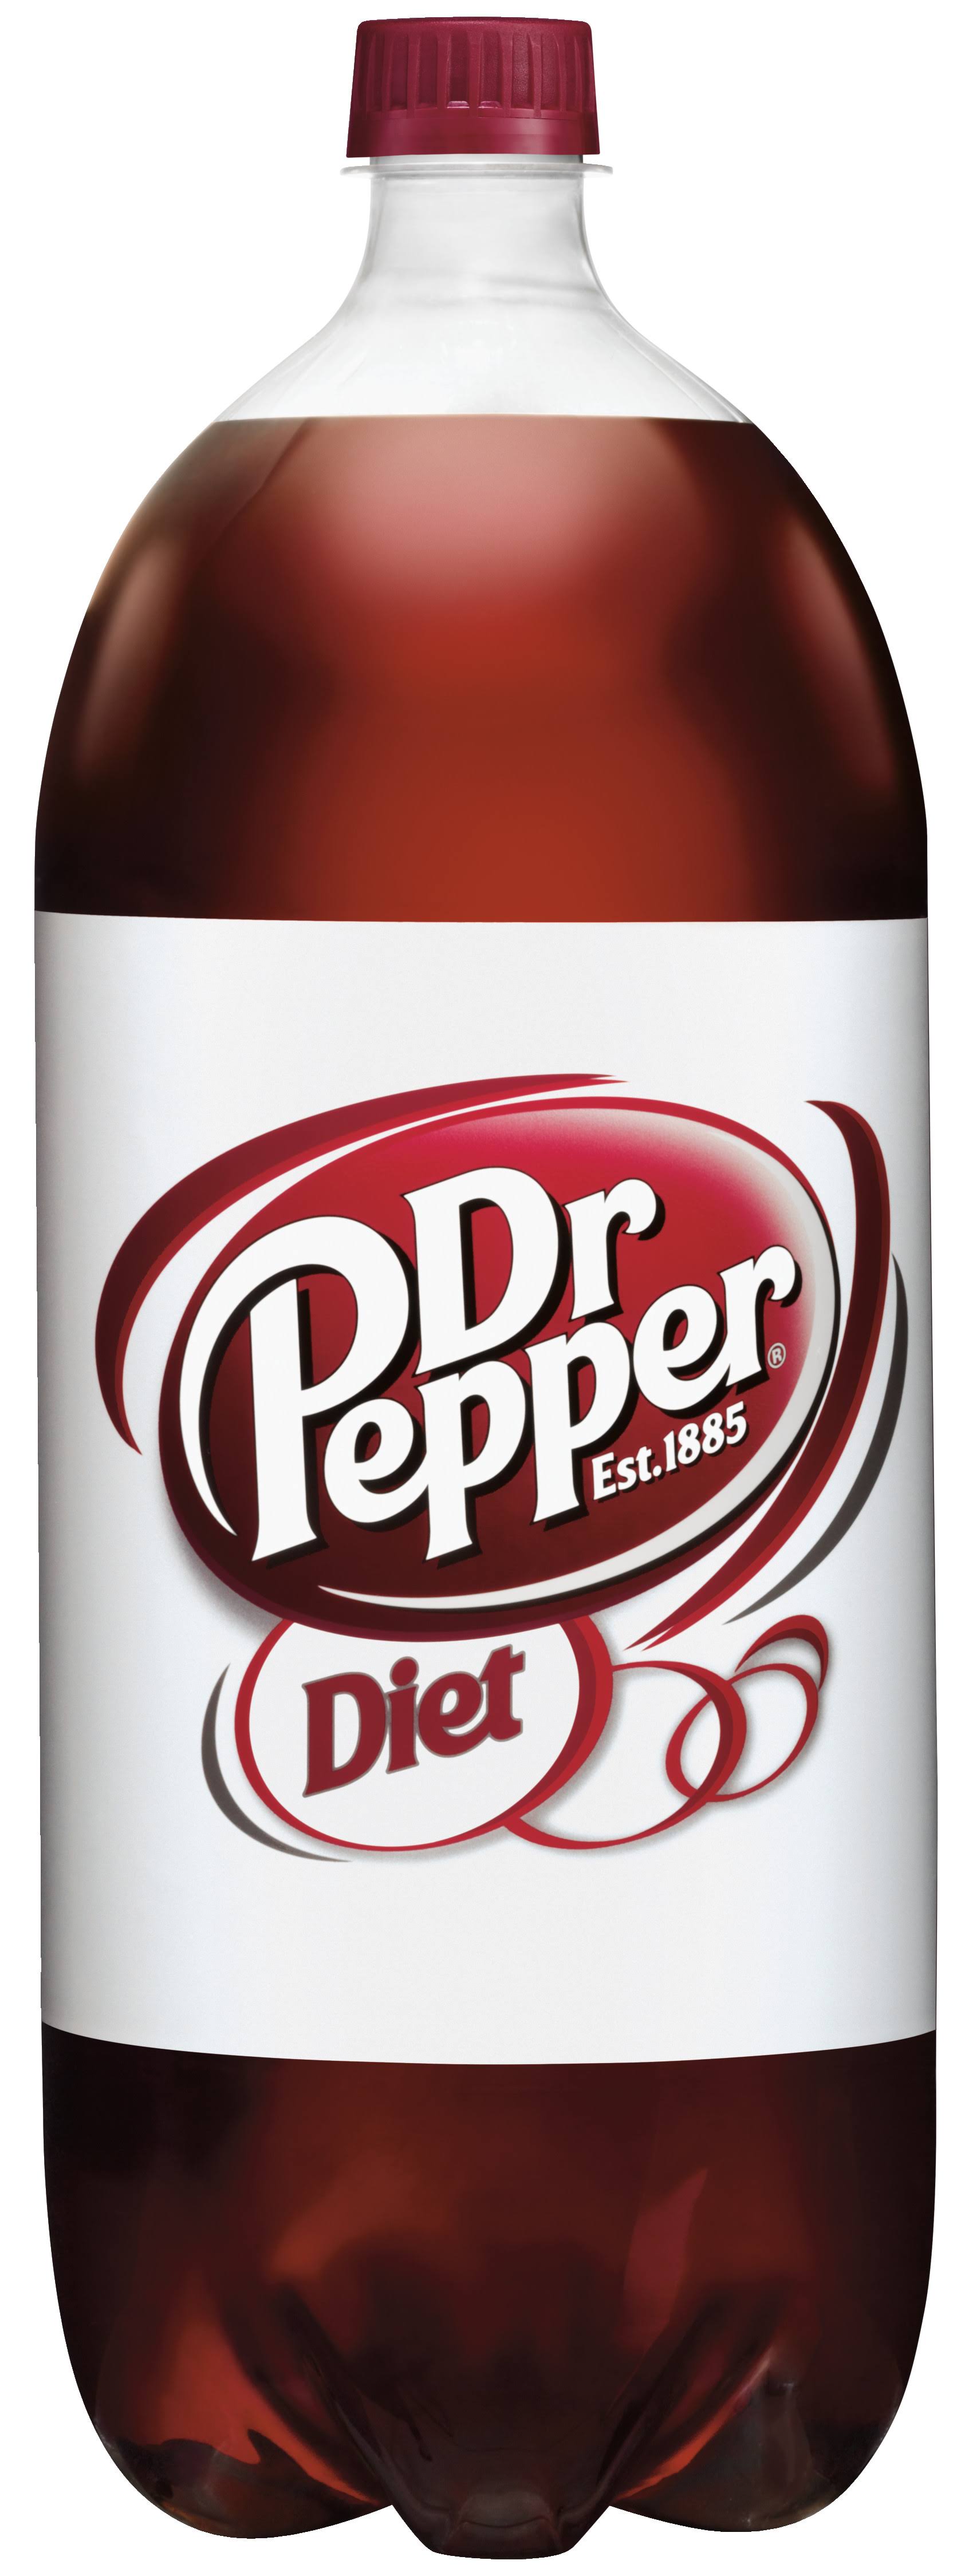 Dr. Pepper Diet Soda